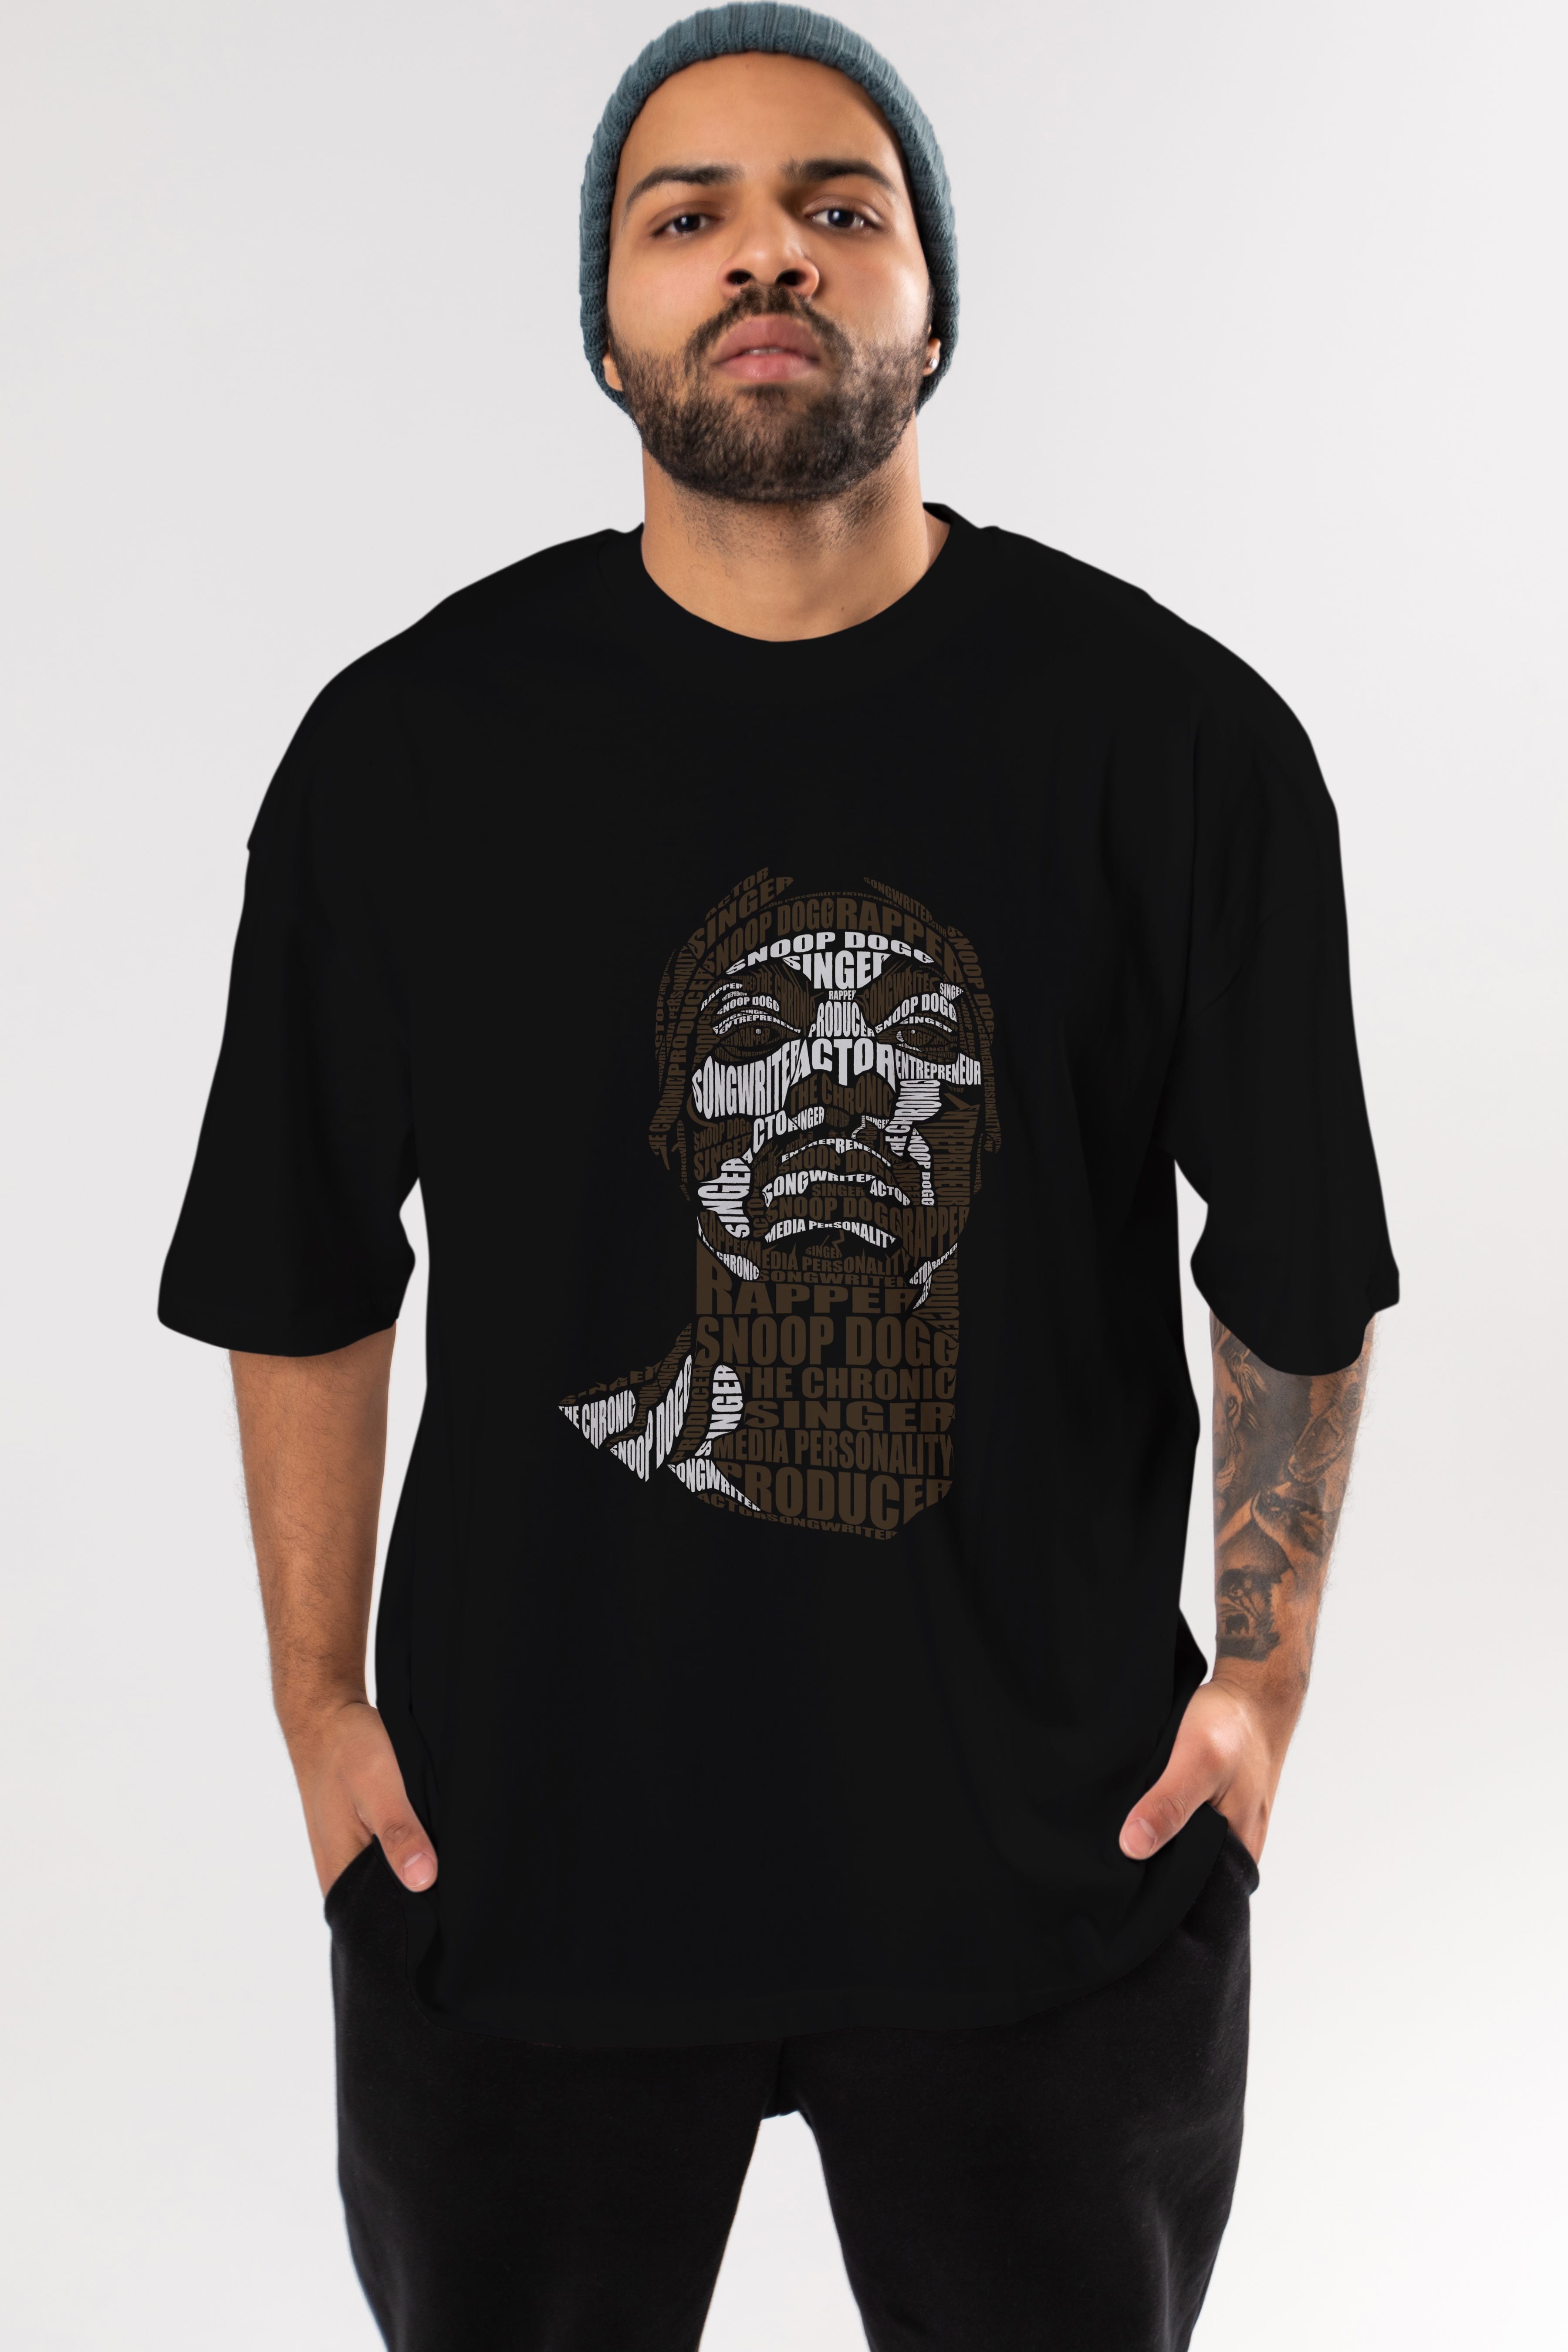 Snoop Dogg Calligram Ön Baskılı Oversize t-shirt %100 pamuk Erkek Kadın Unisex